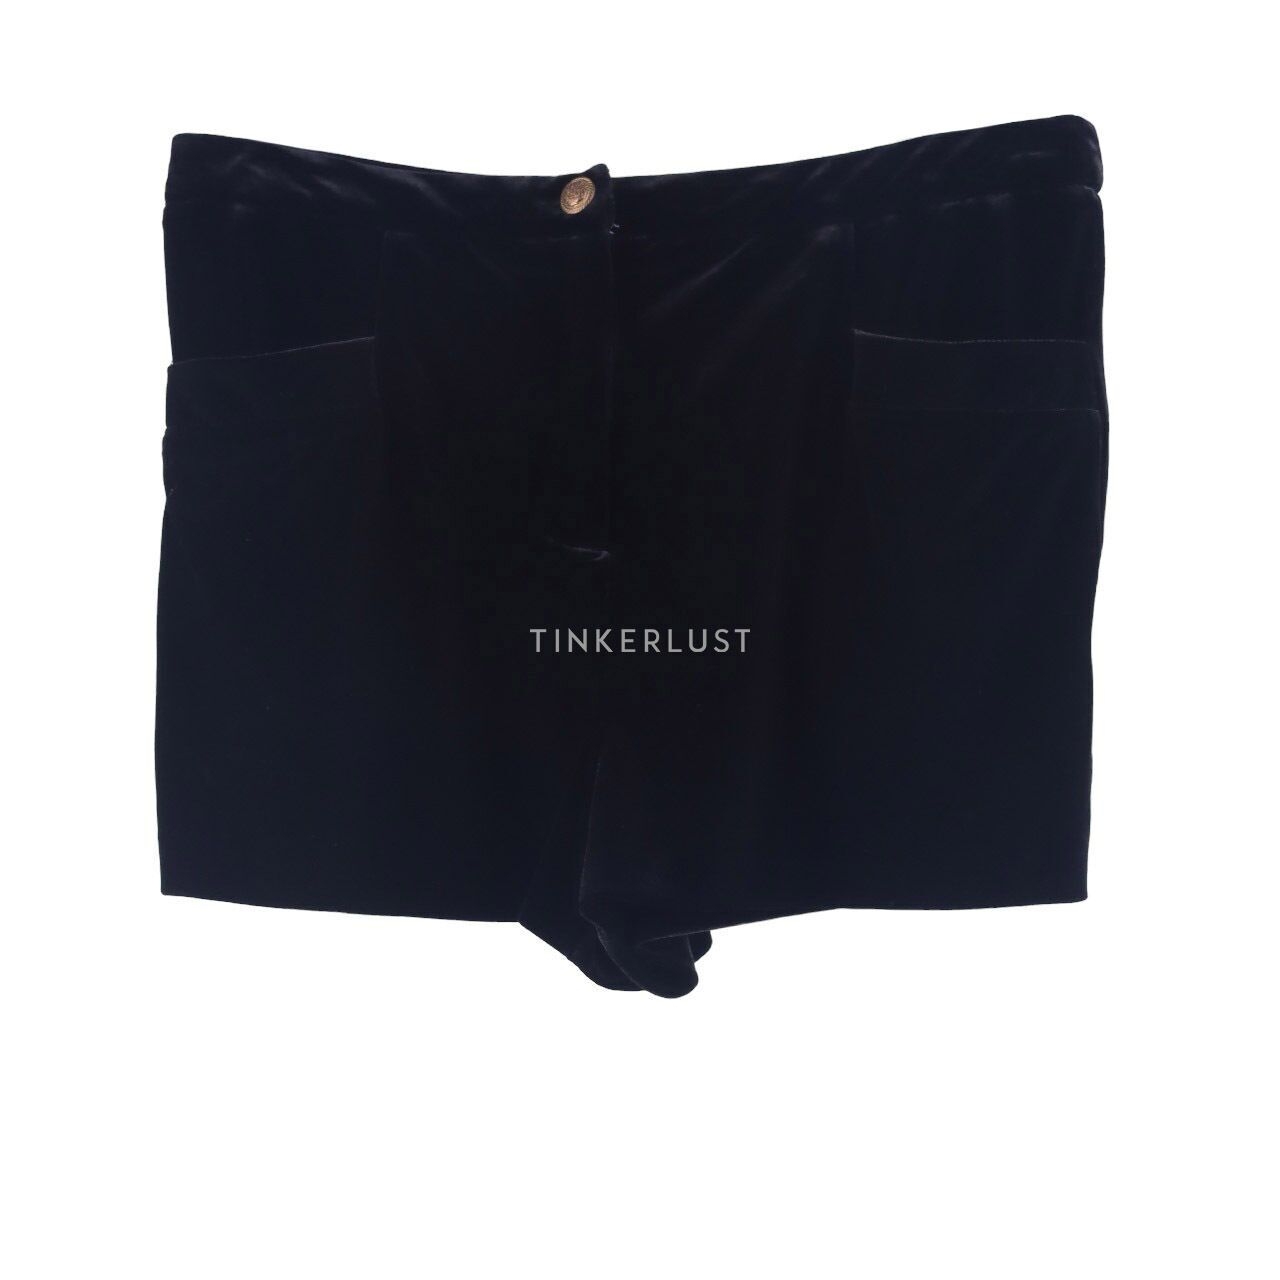 Topshop Black Velvet Short Pants